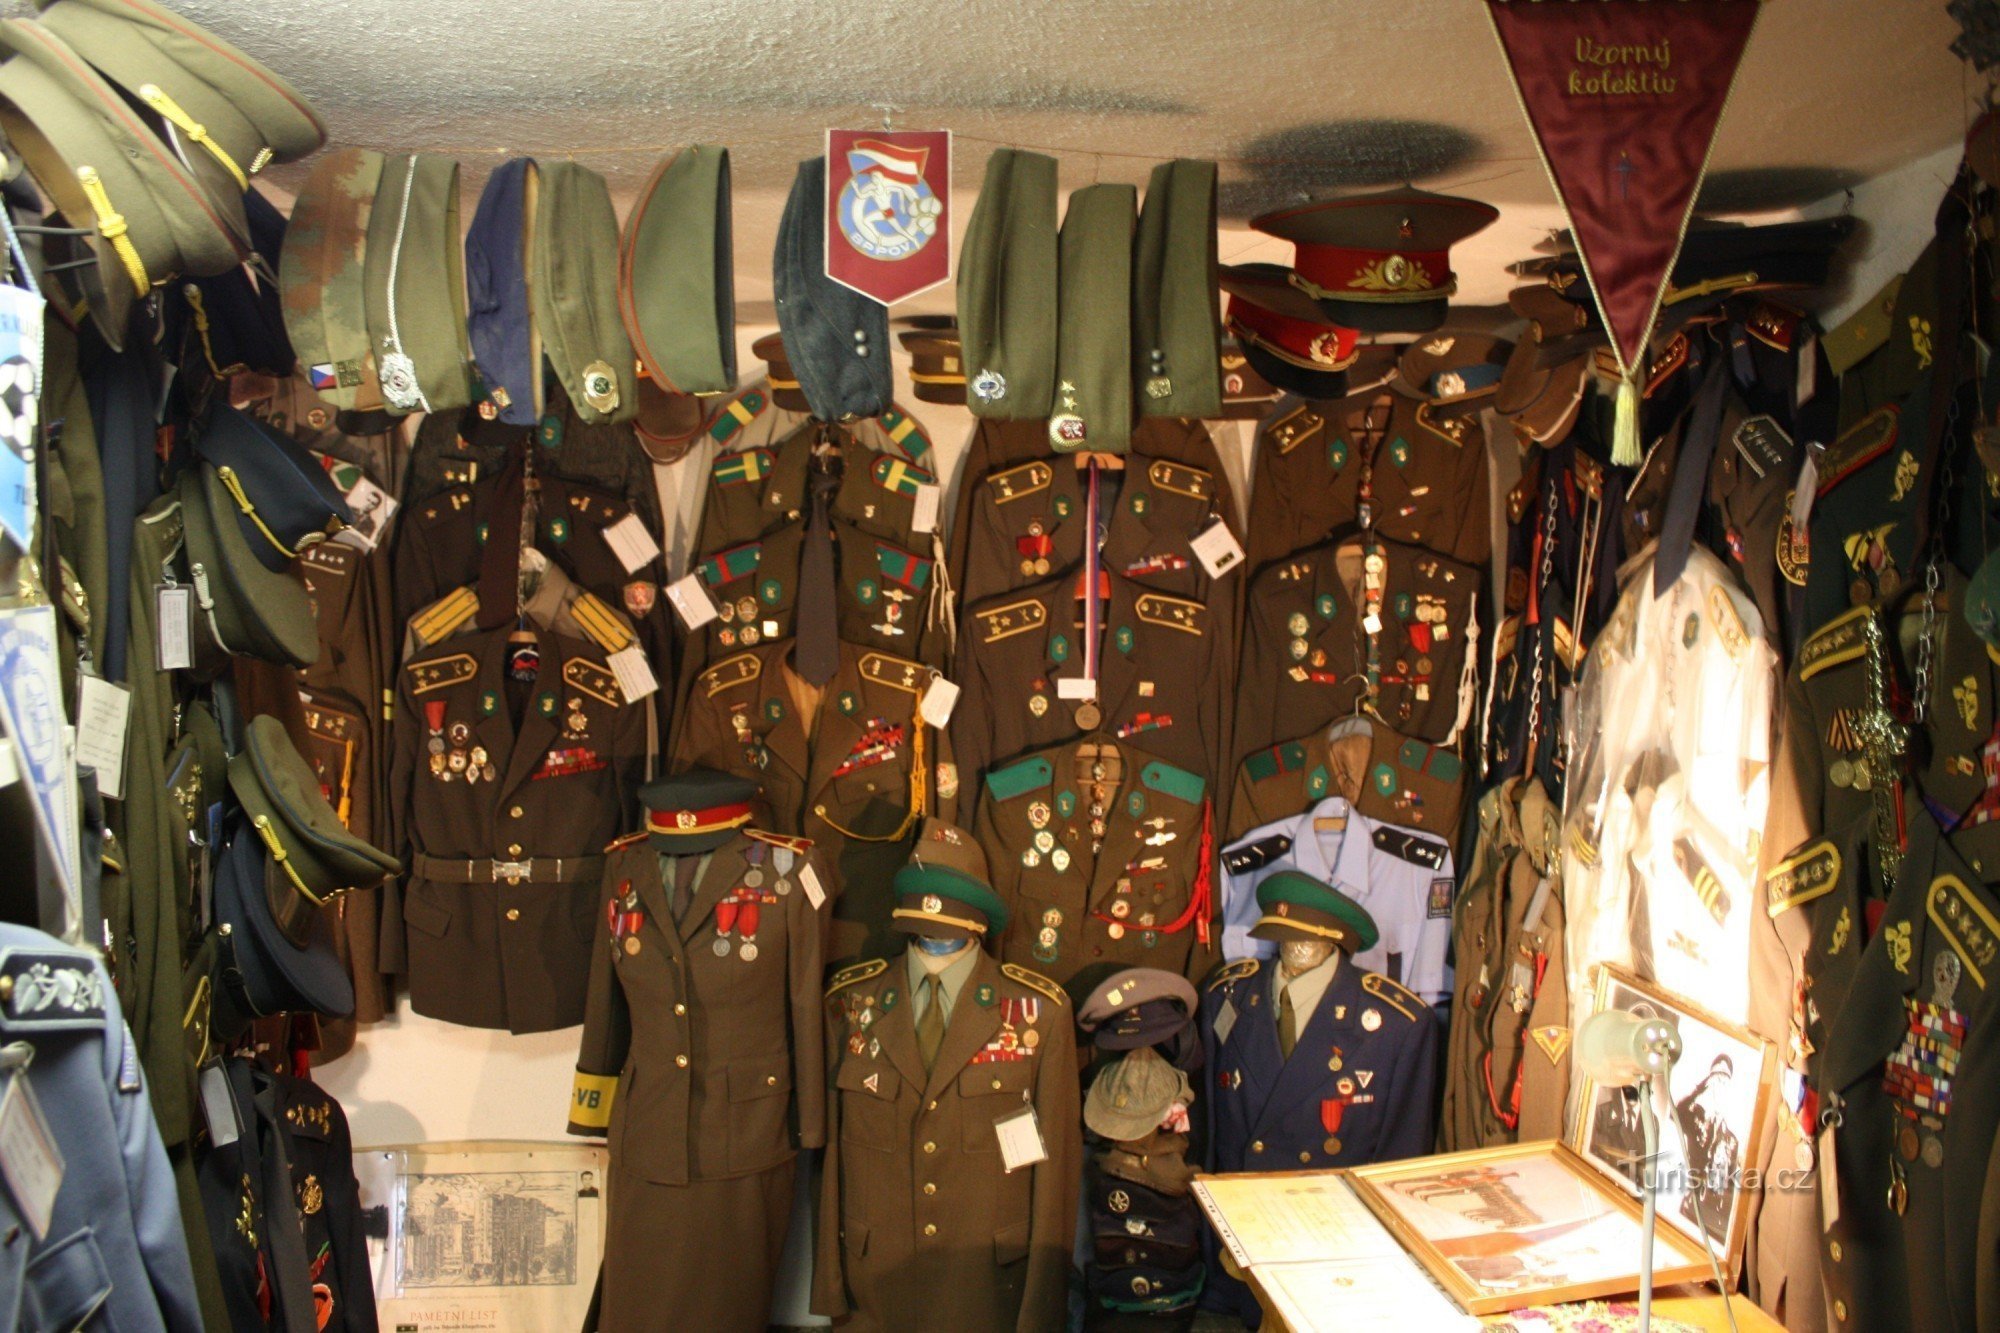 Zasebni muzej varnostnih sil gospoda Koteka pred novembrom